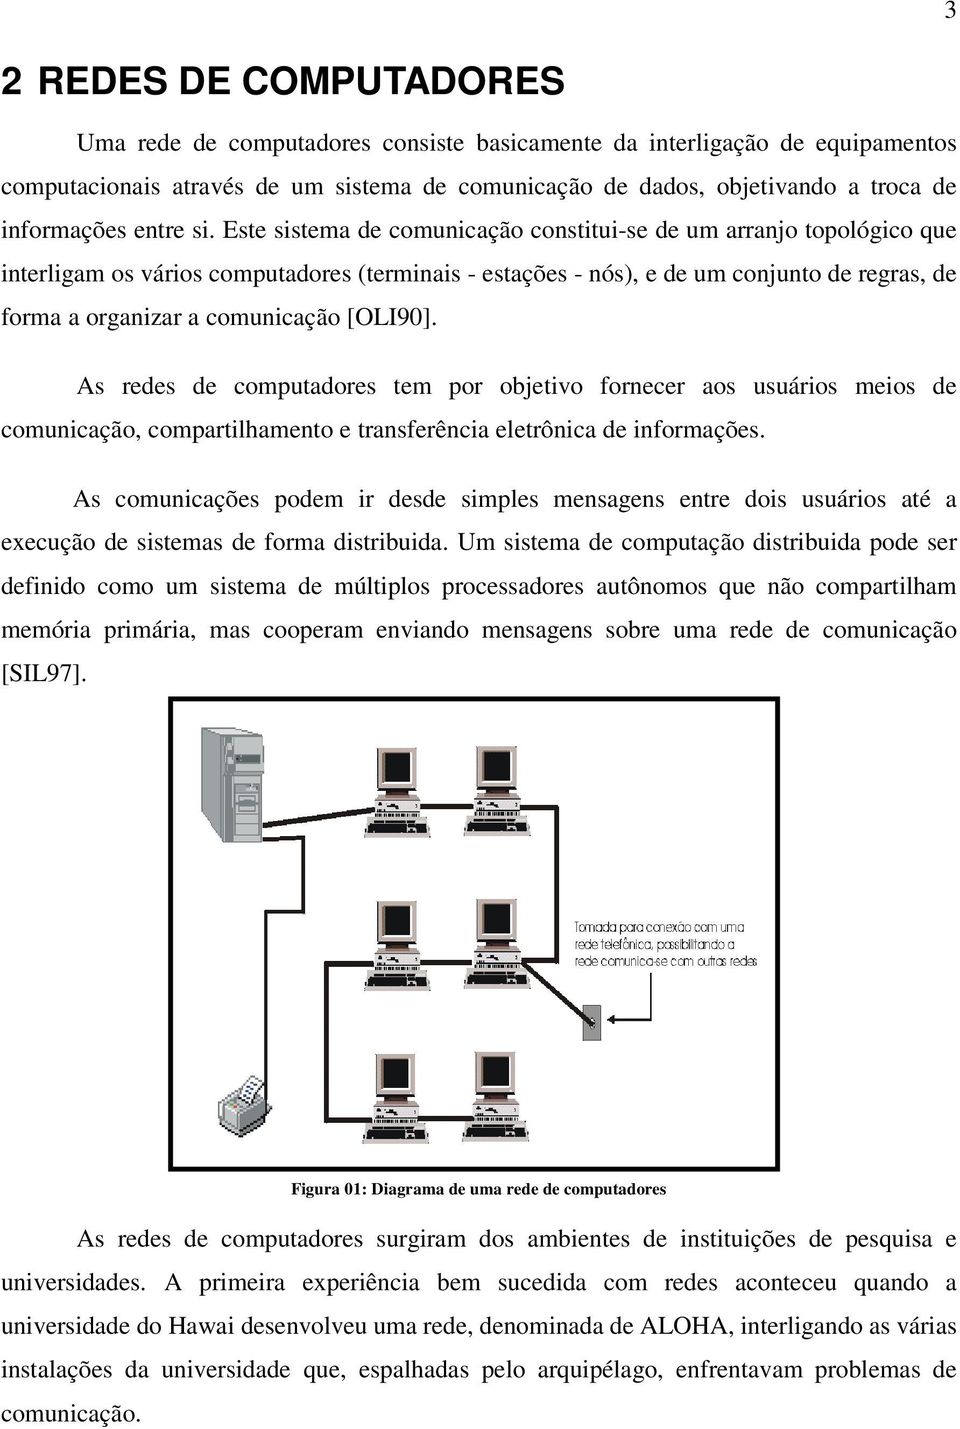 Este sistema de comunicação constitui-se de um arranjo topológico que interligam os vários computadores (terminais - estações - nós), e de um conjunto de regras, de forma a organizar a comunicação